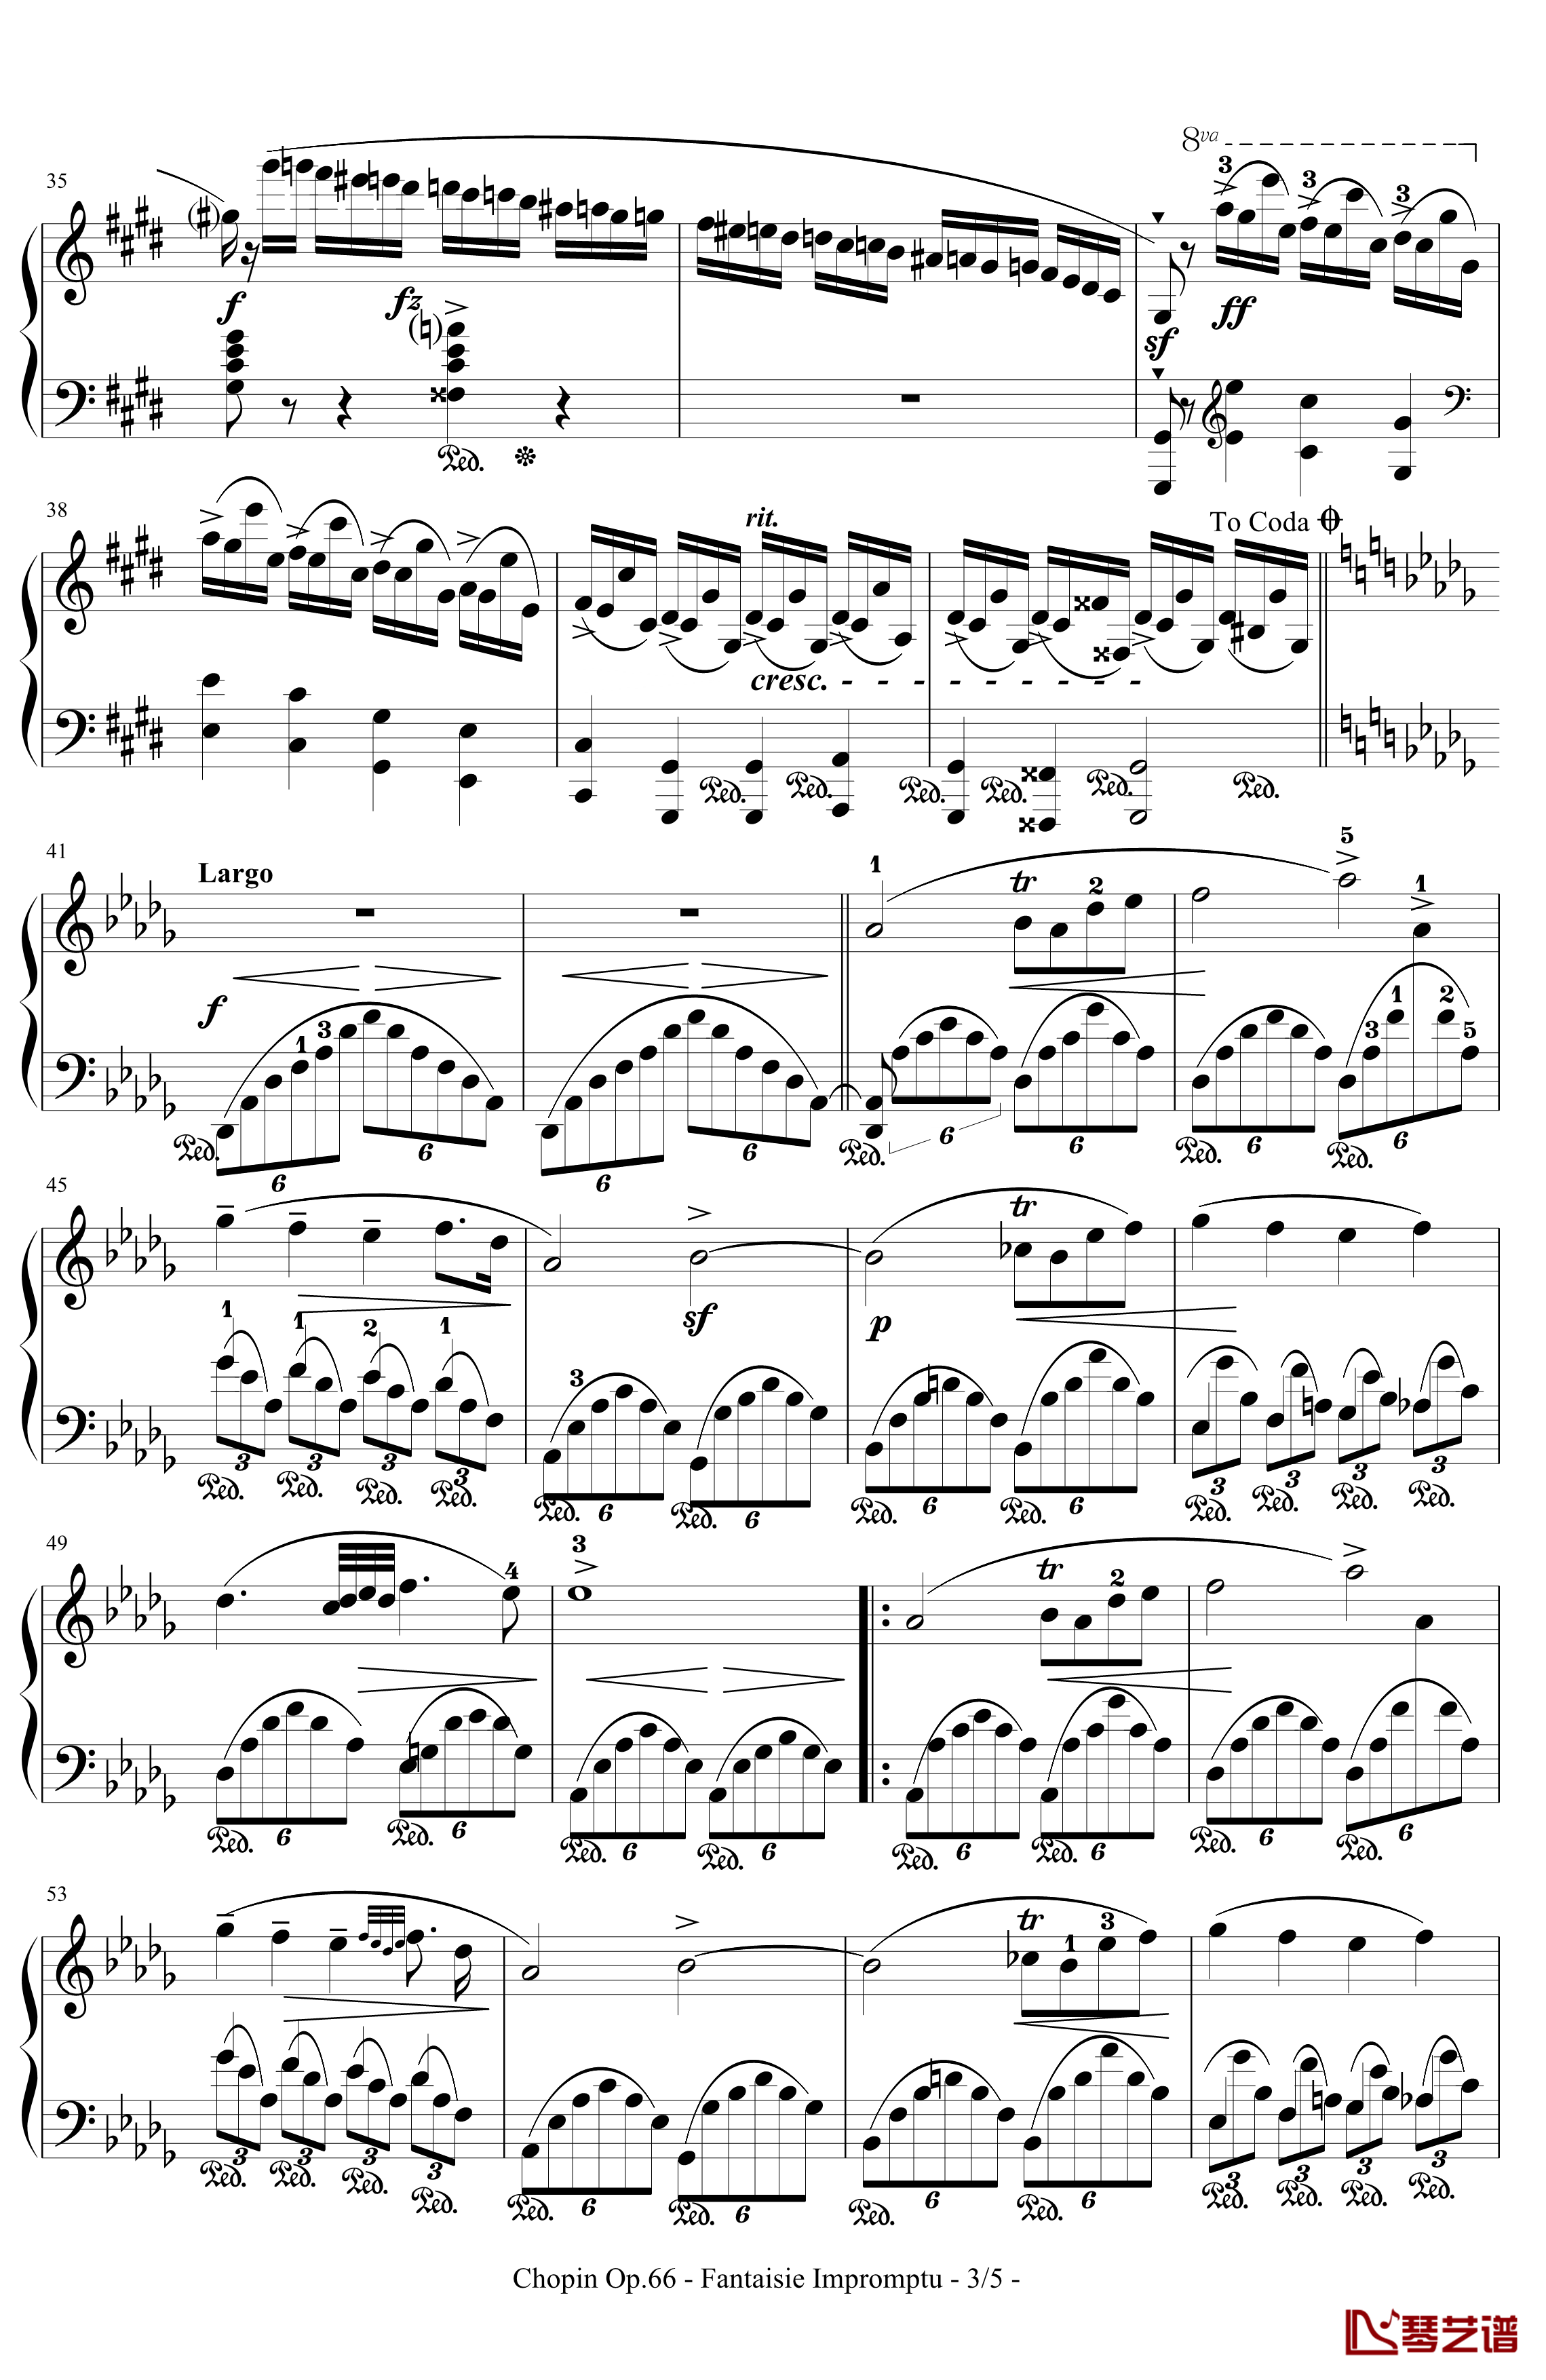 即兴幻想曲钢琴谱-带指法-Op.66-肖邦-chopin3